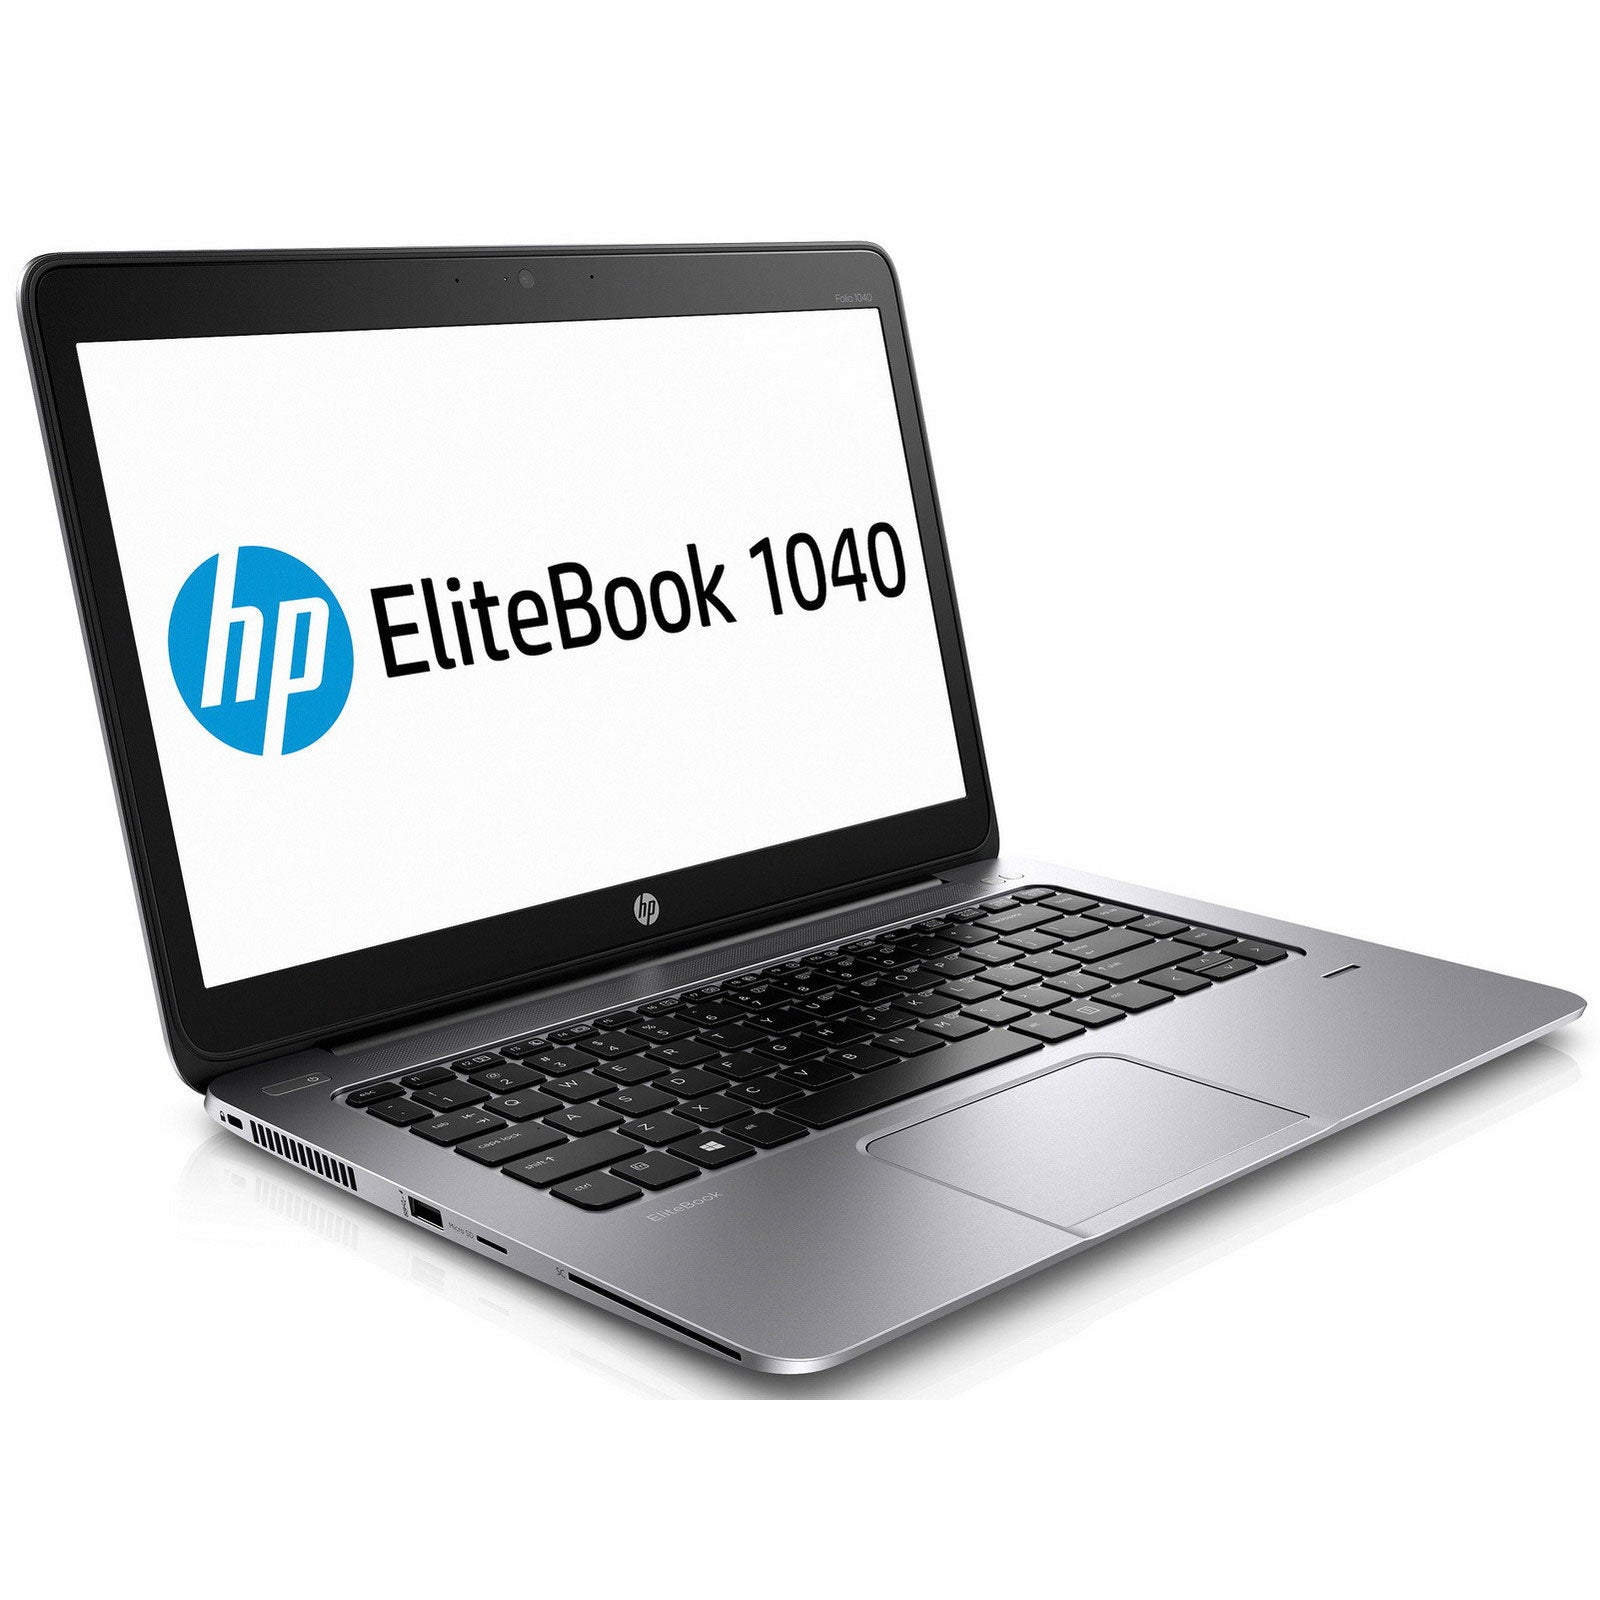 Notebook ricondizionato - Grado A - HP EliteBook Folio 1040 G2 Notebook 14" Intel i7-5600U Ram 8Gb SSD 256Gb Webcam (Ricondizionato Grado A) - Disponibile in 2-4 giorni lavorativi